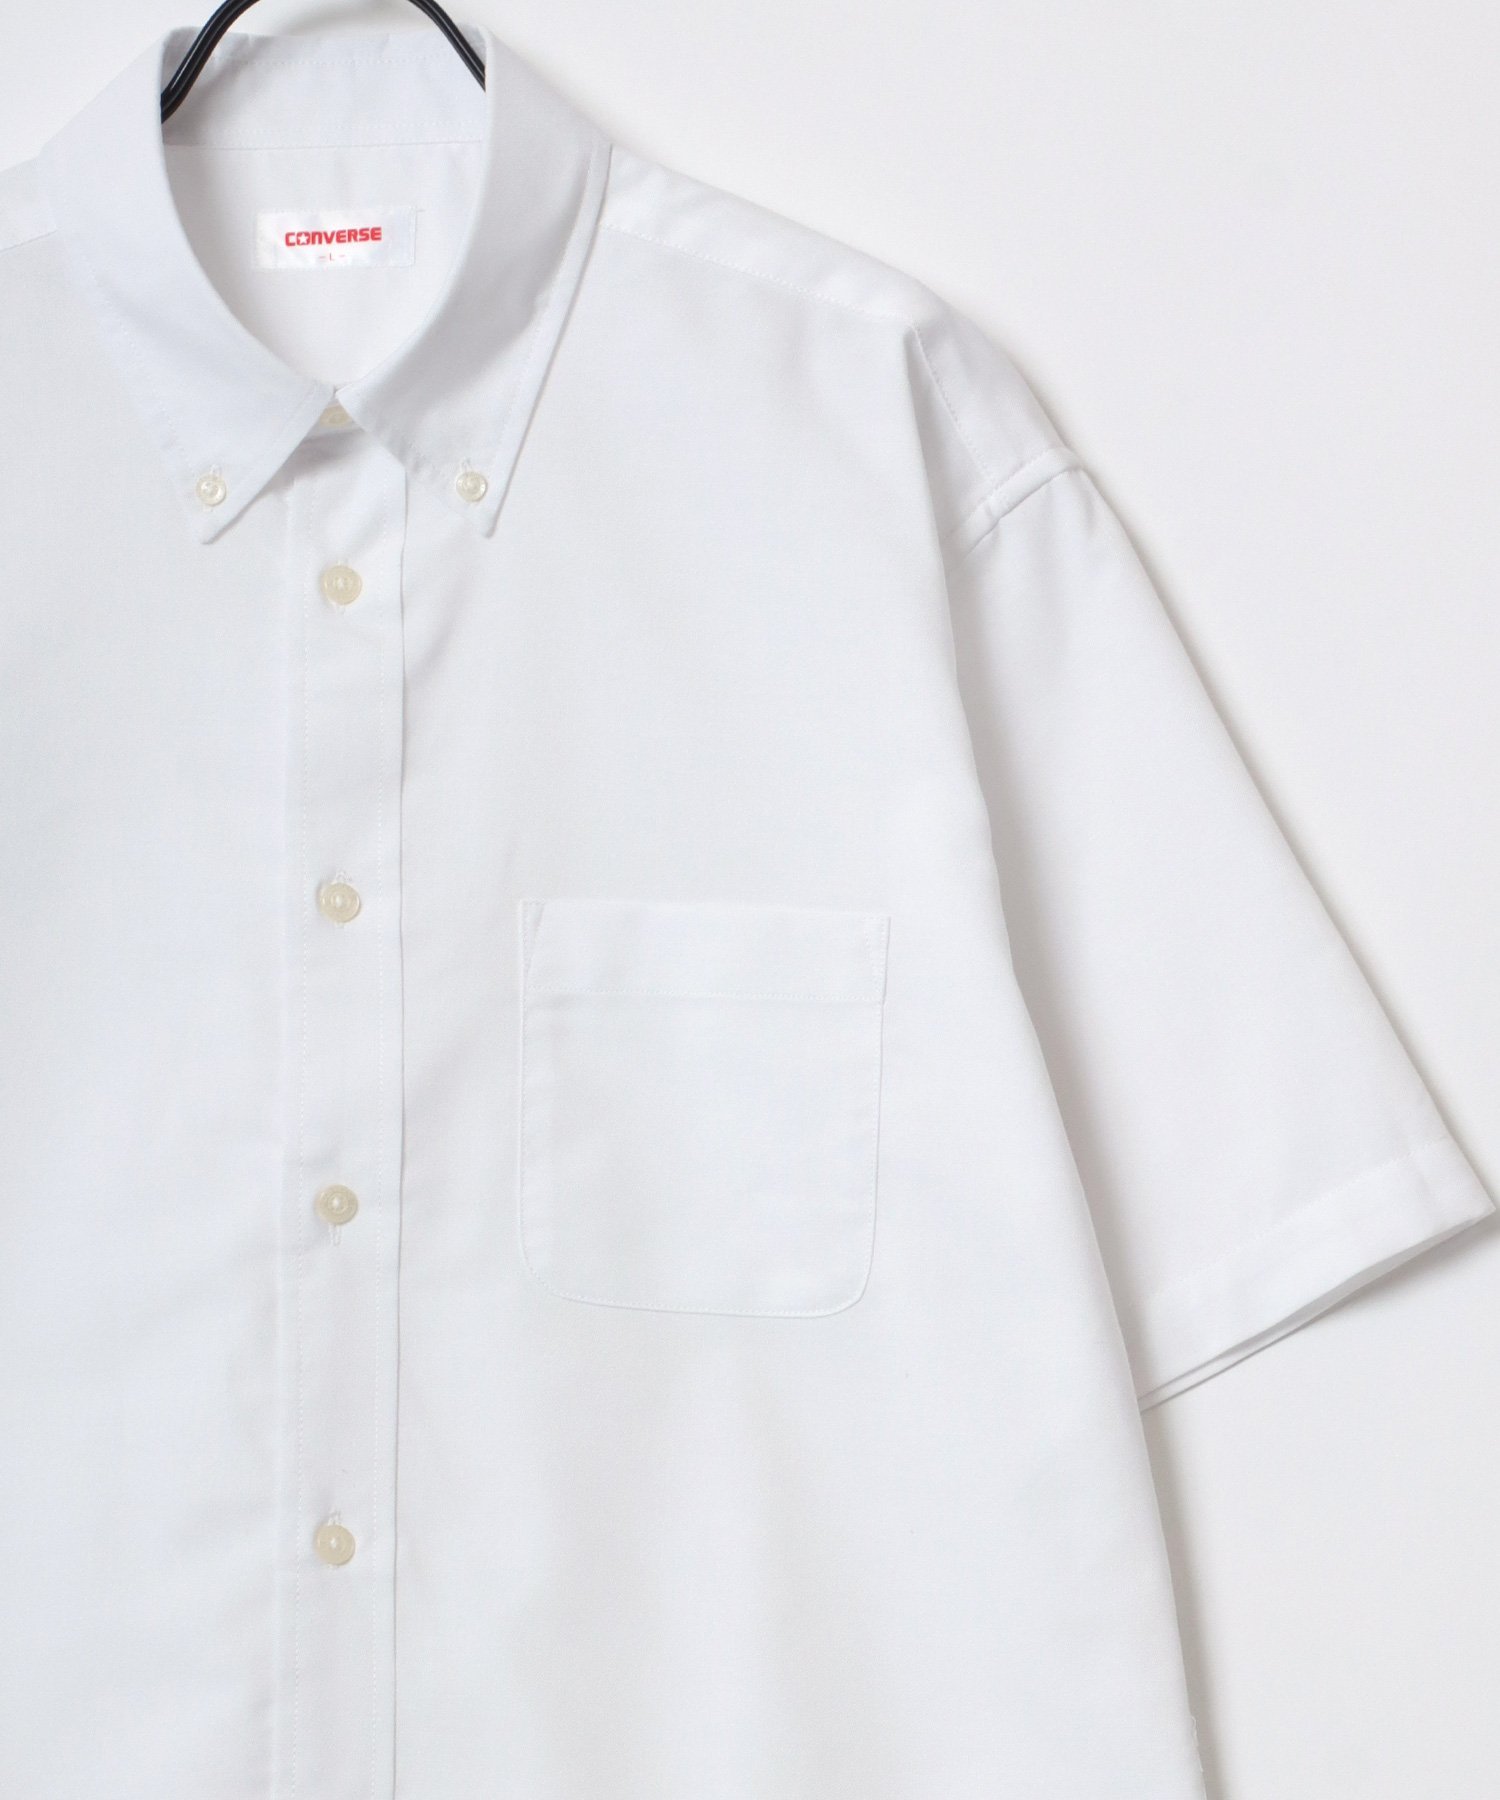 CONVERSE/(M)無地 ボタンダウン/チェック レギュラーカラー 半袖シャツ